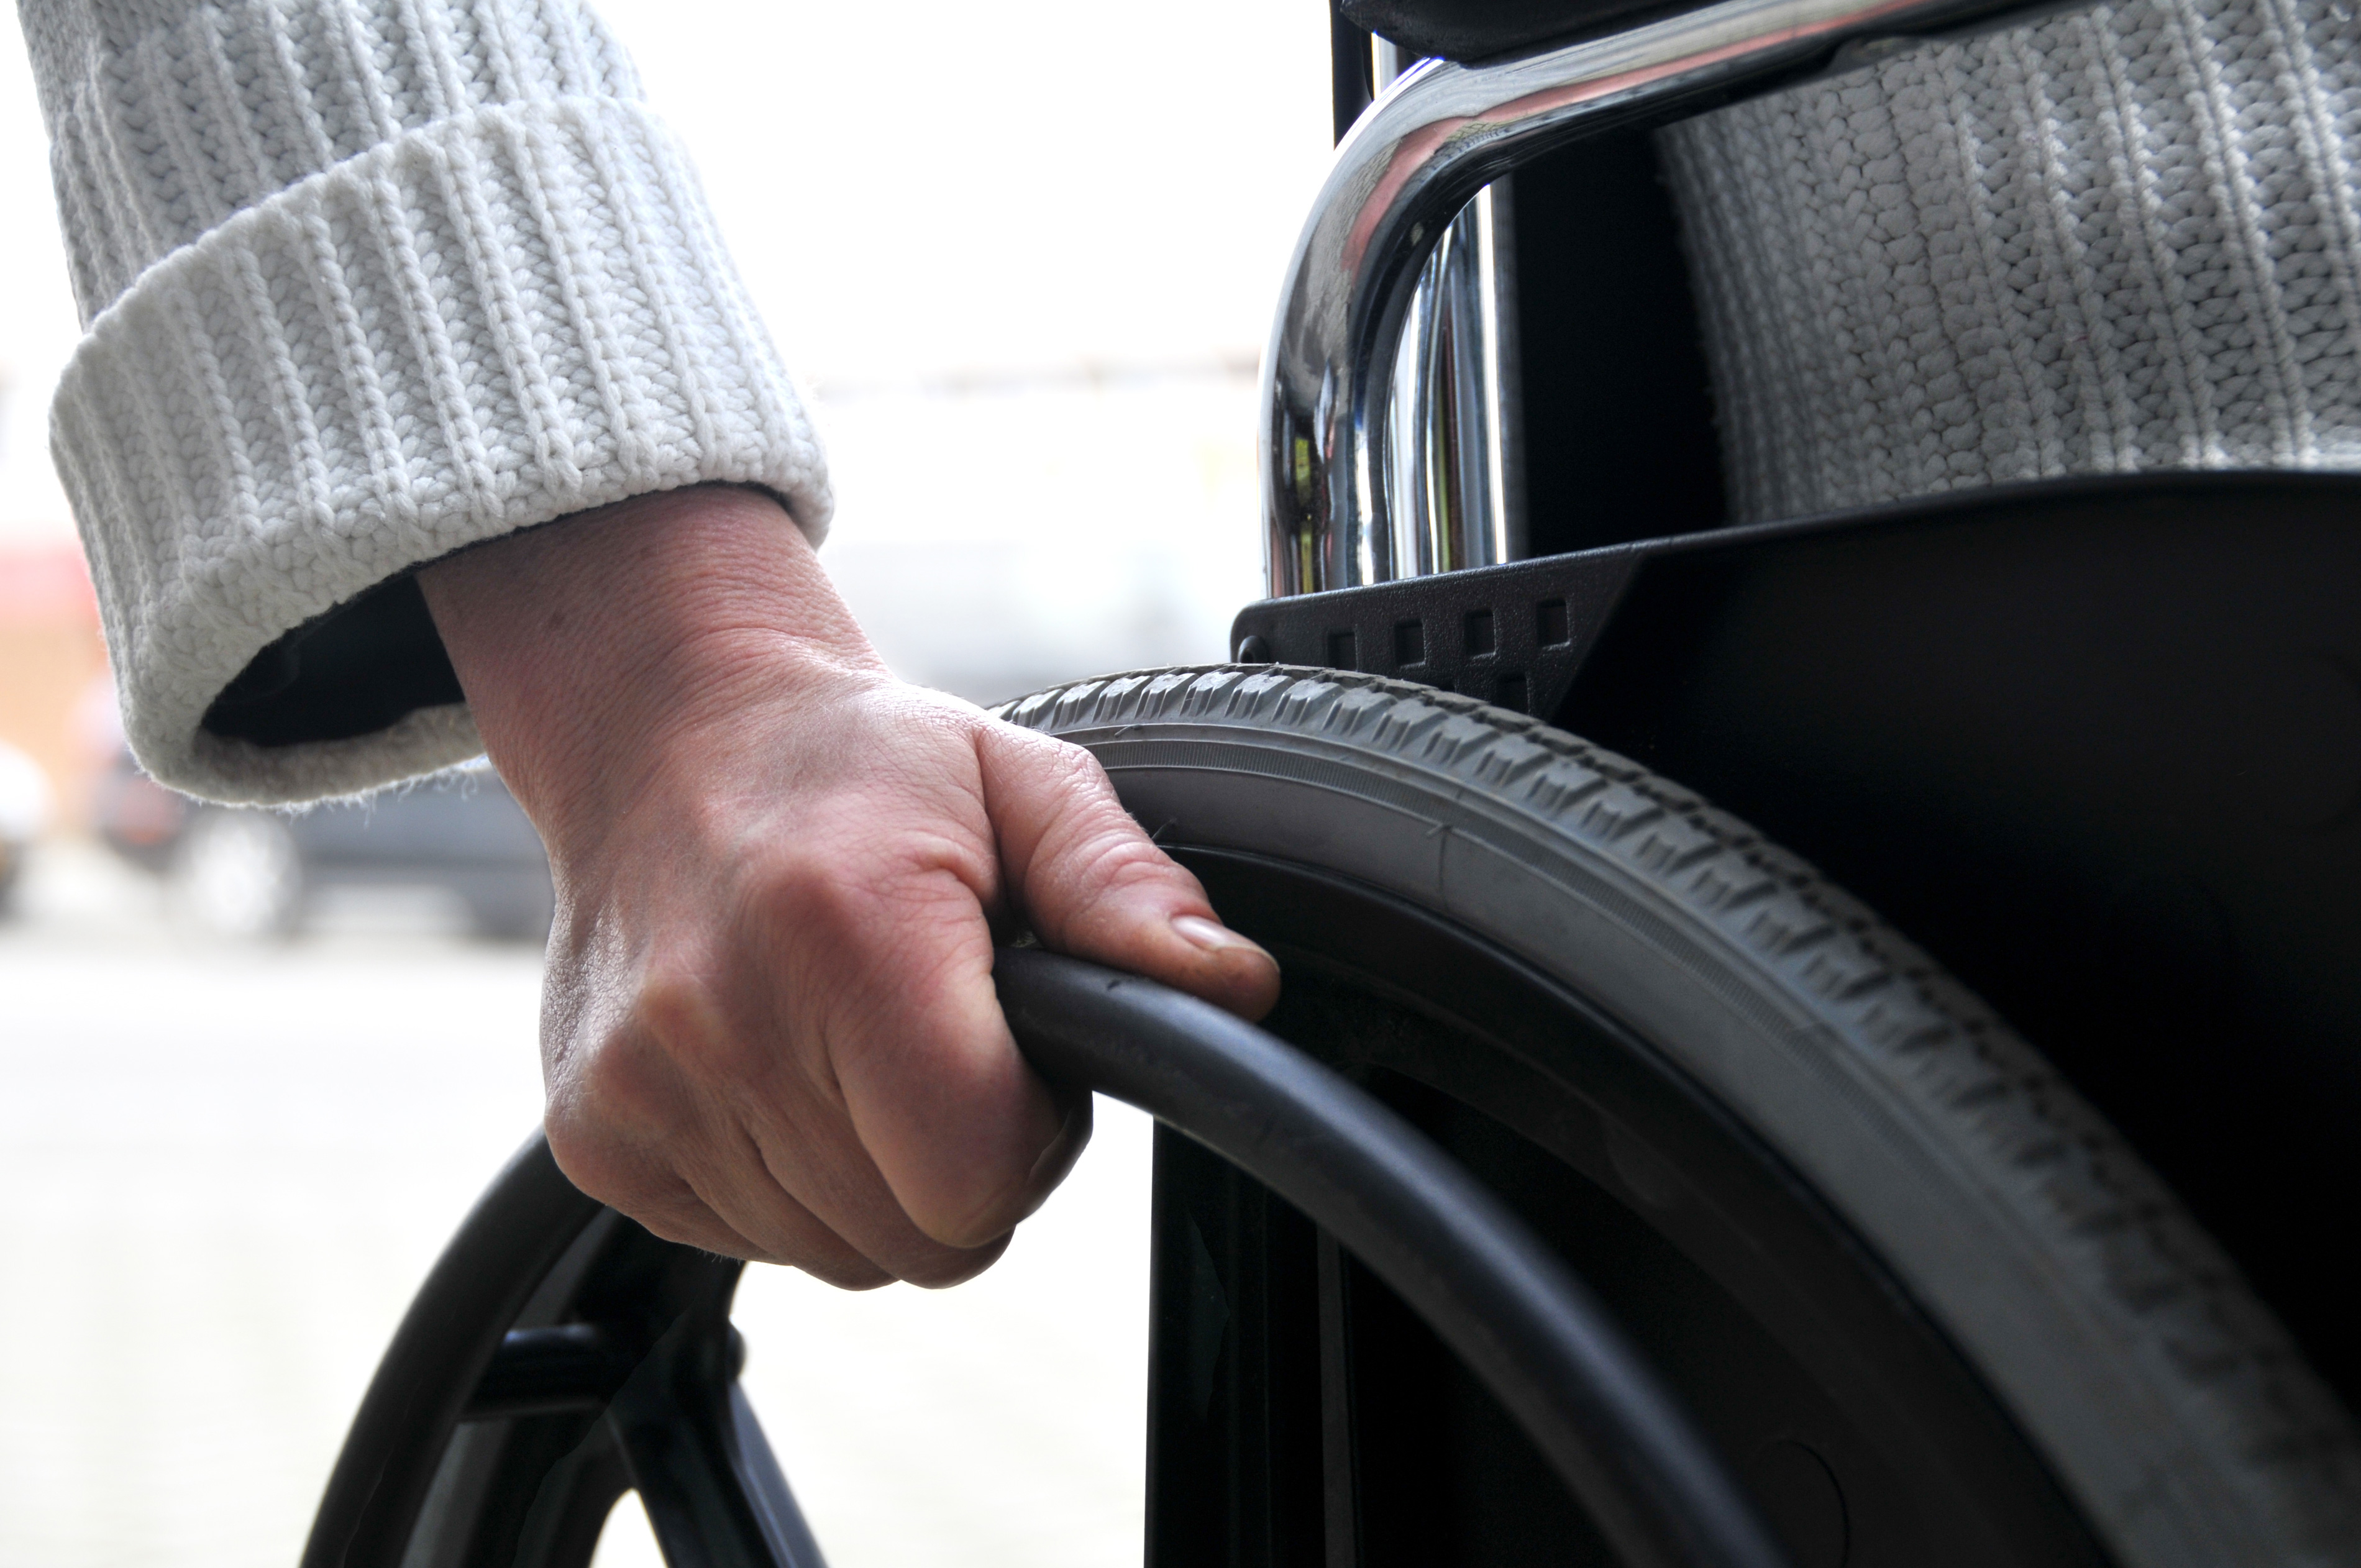 Immagine "Dopo di noi", oltre 11 milioni per i disabili gravi privi del sostegno familiare